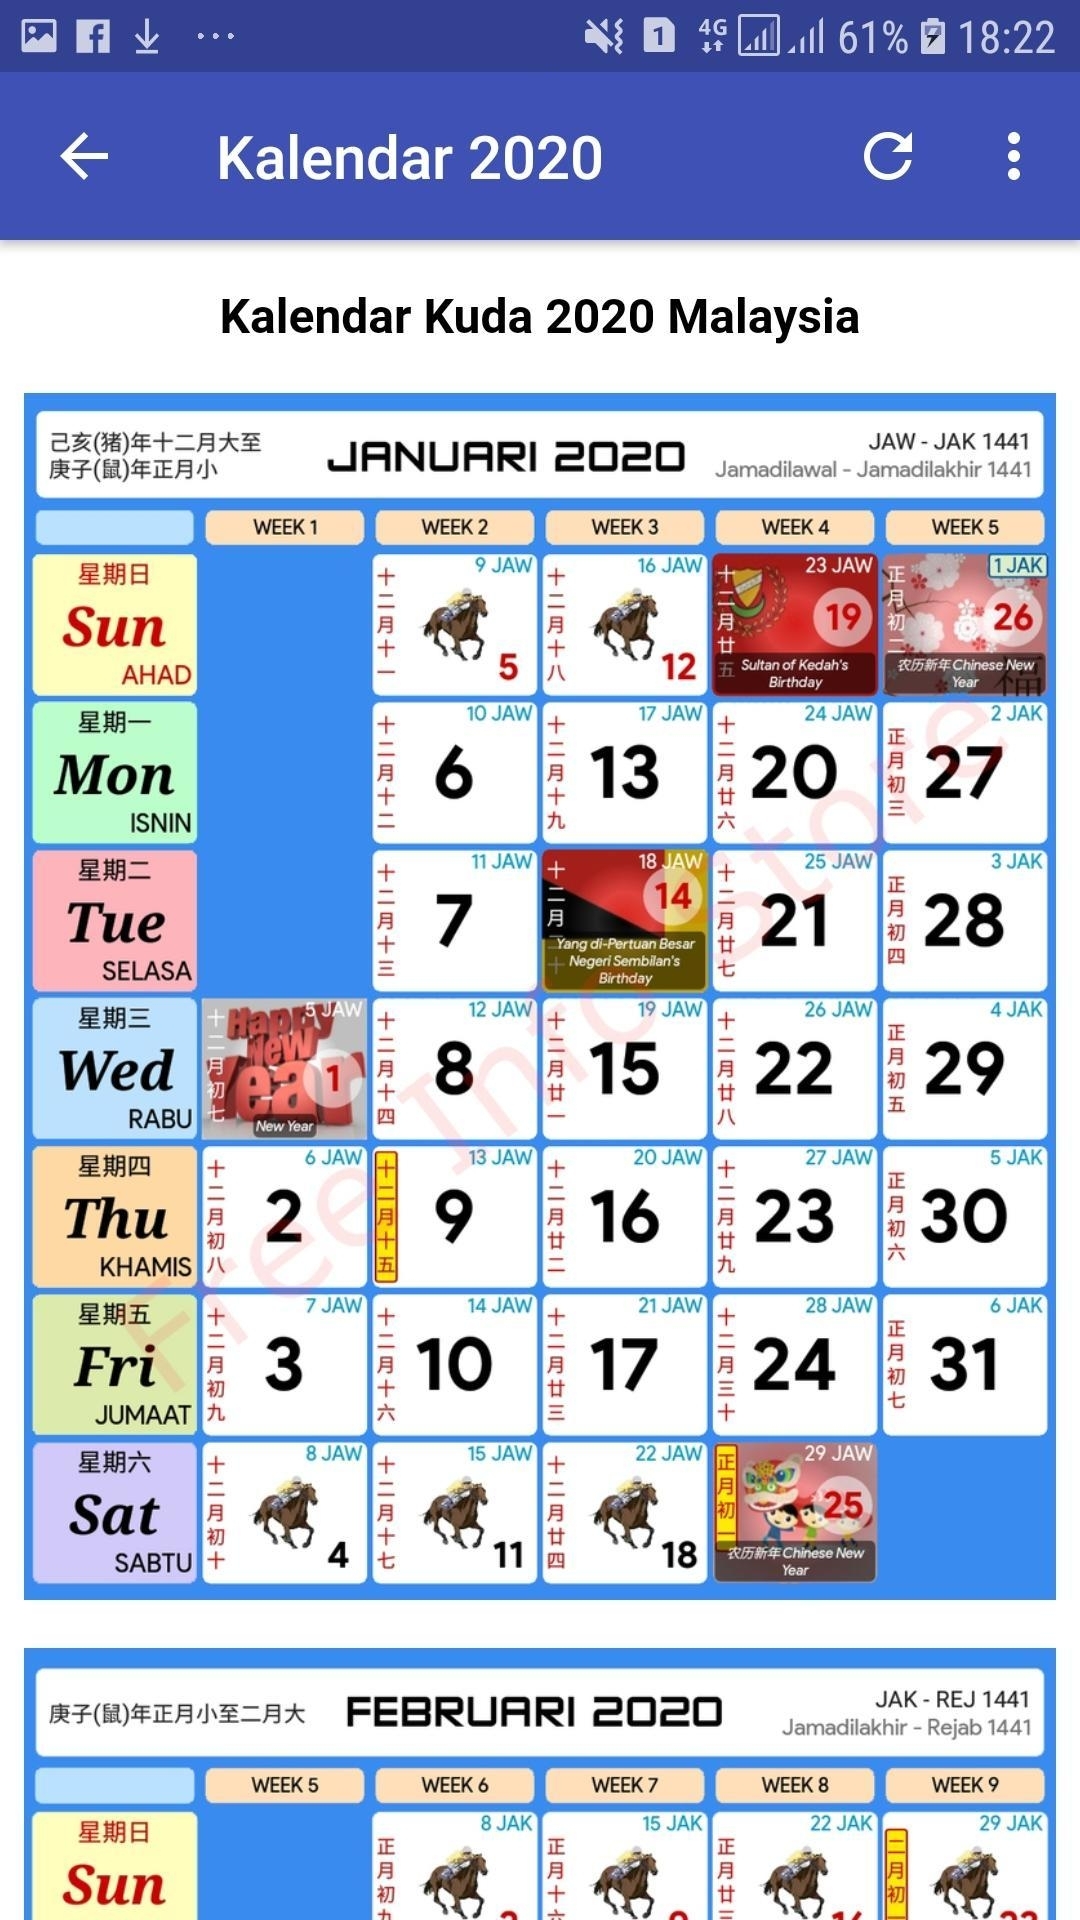 2021 Calendar Kuda Malaysia / Malaysia Calendar 2020 With